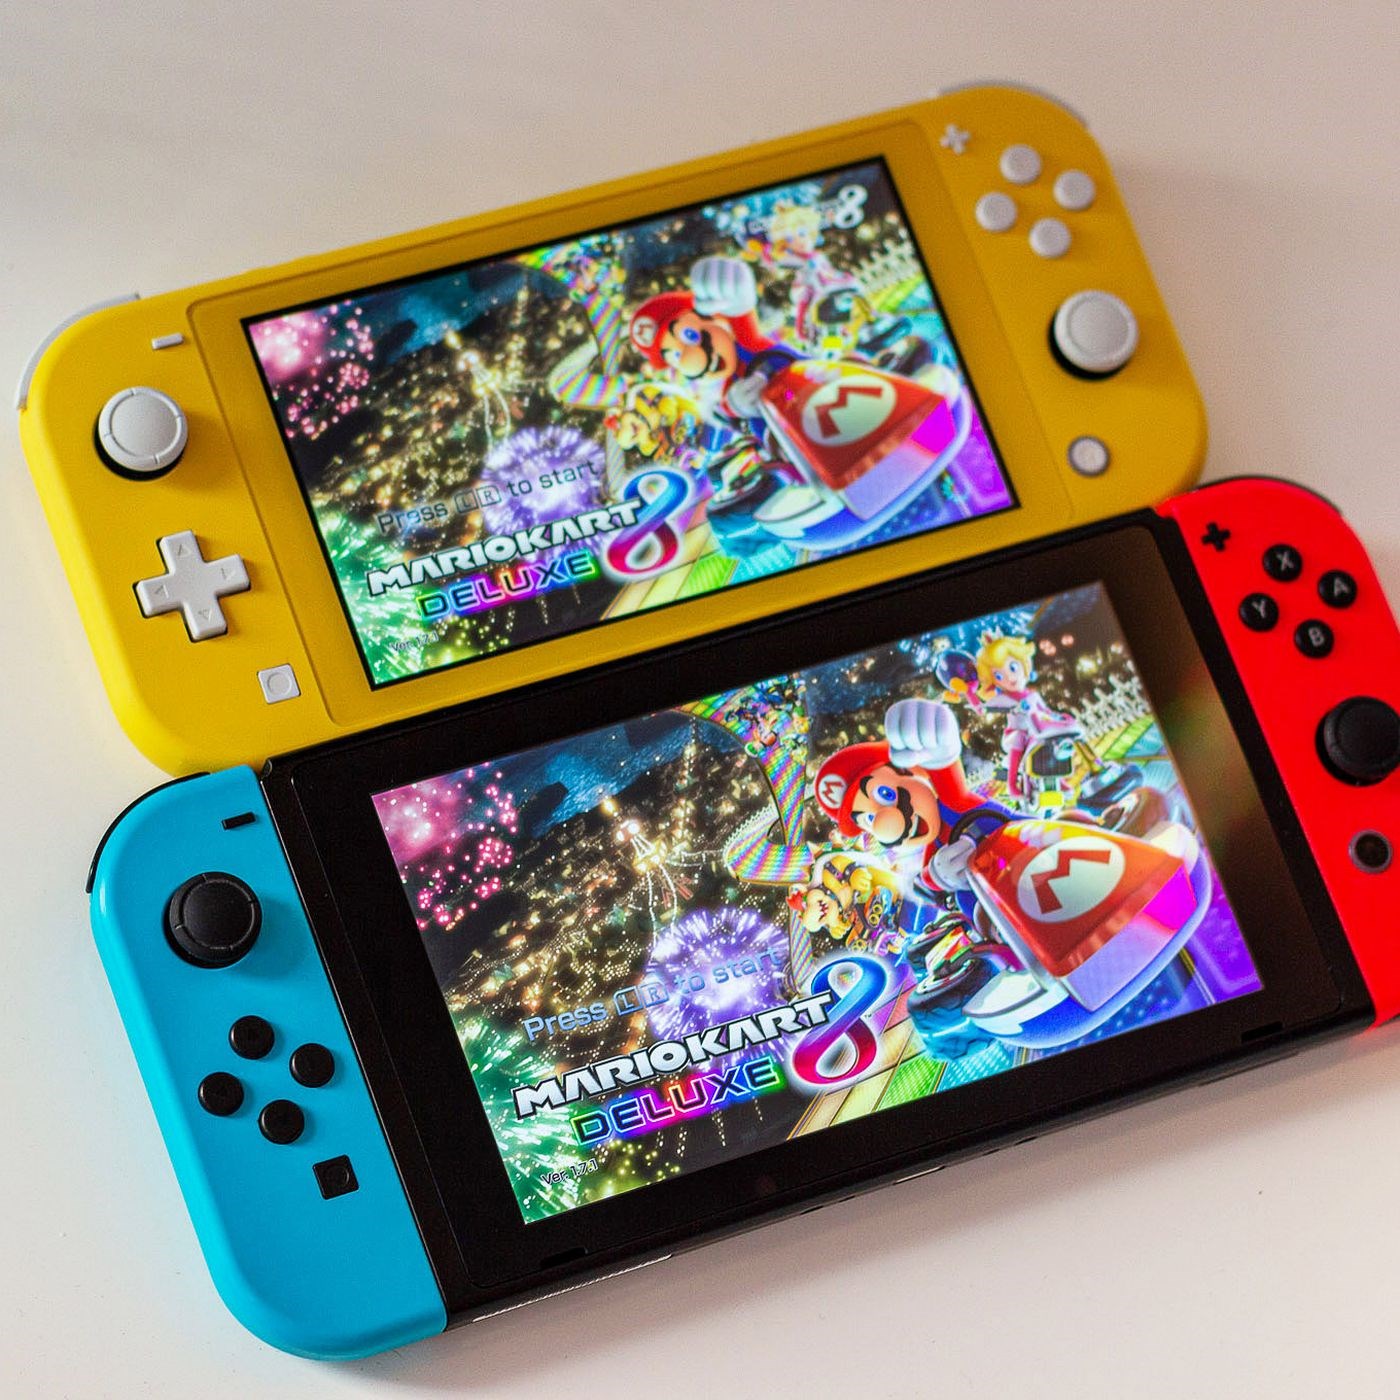 Nintendo Switch satışları hız kesmiyor